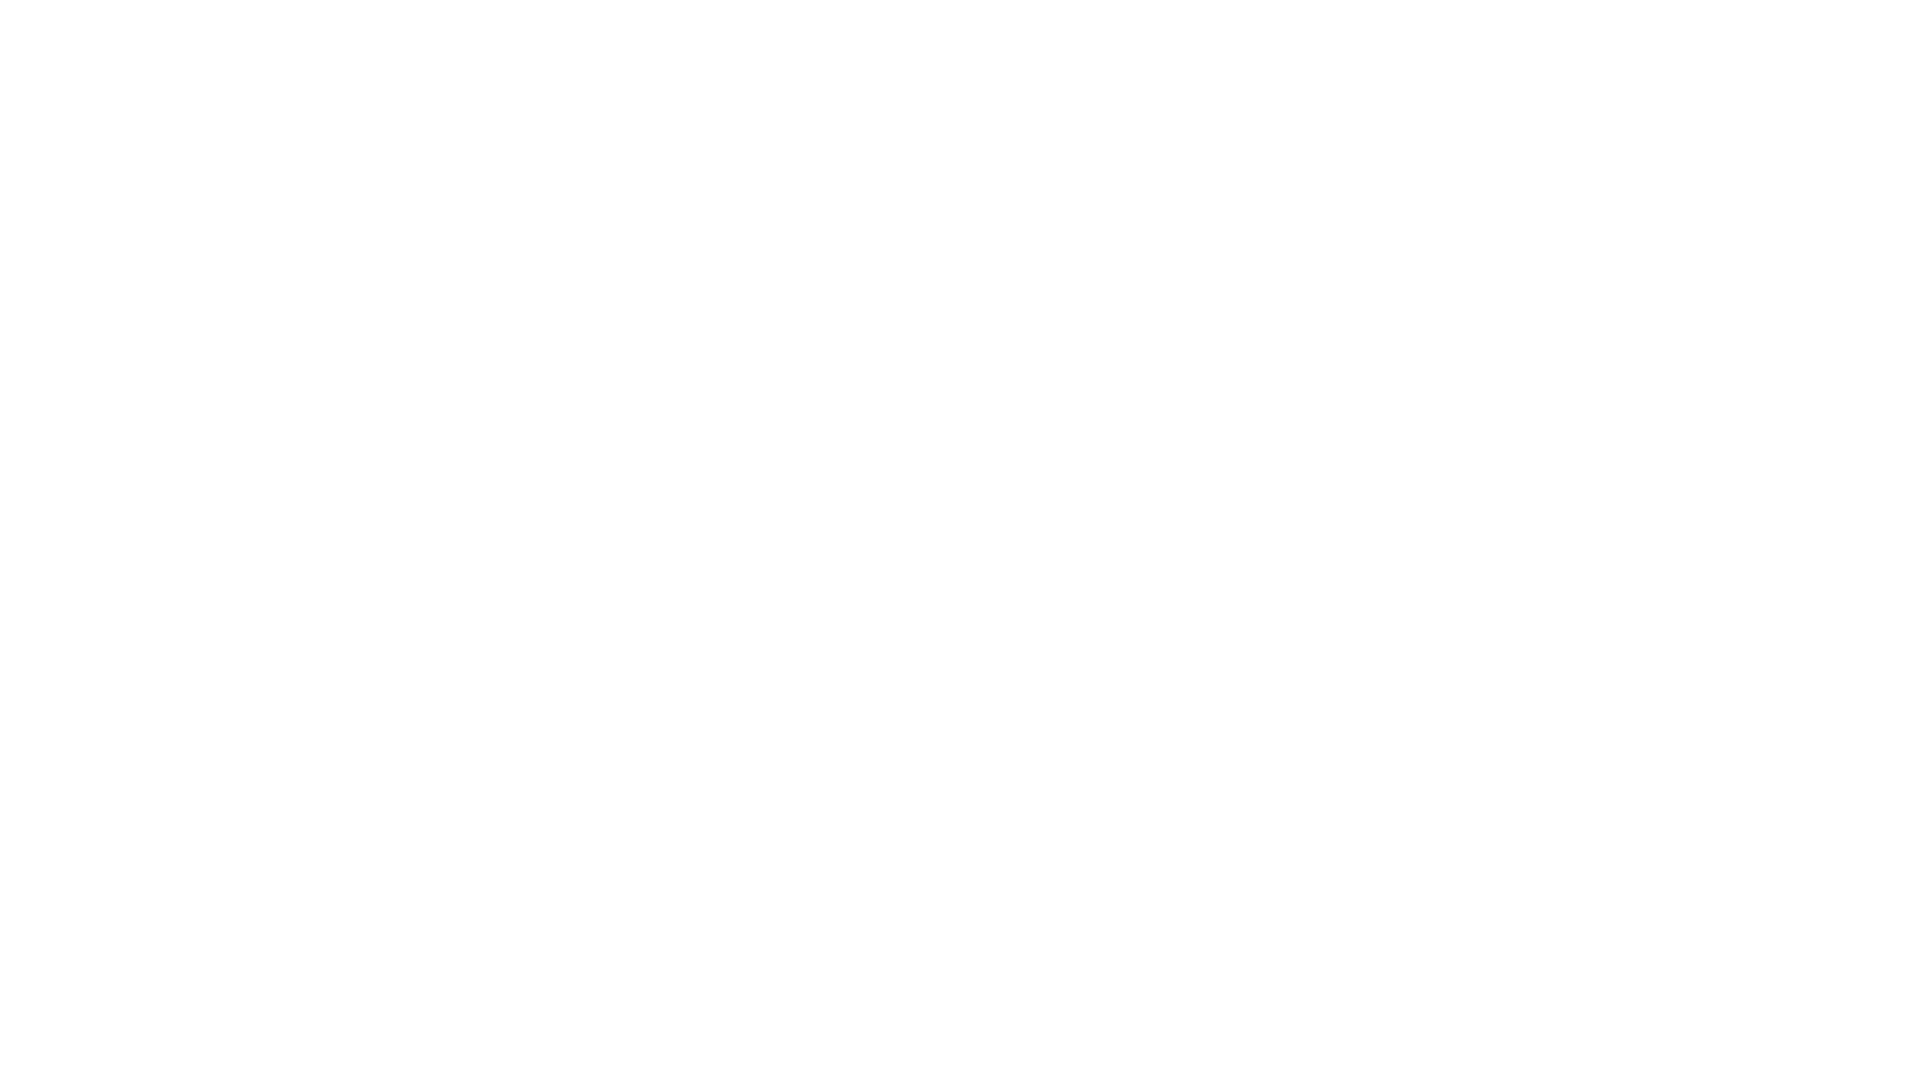 Bracco_White